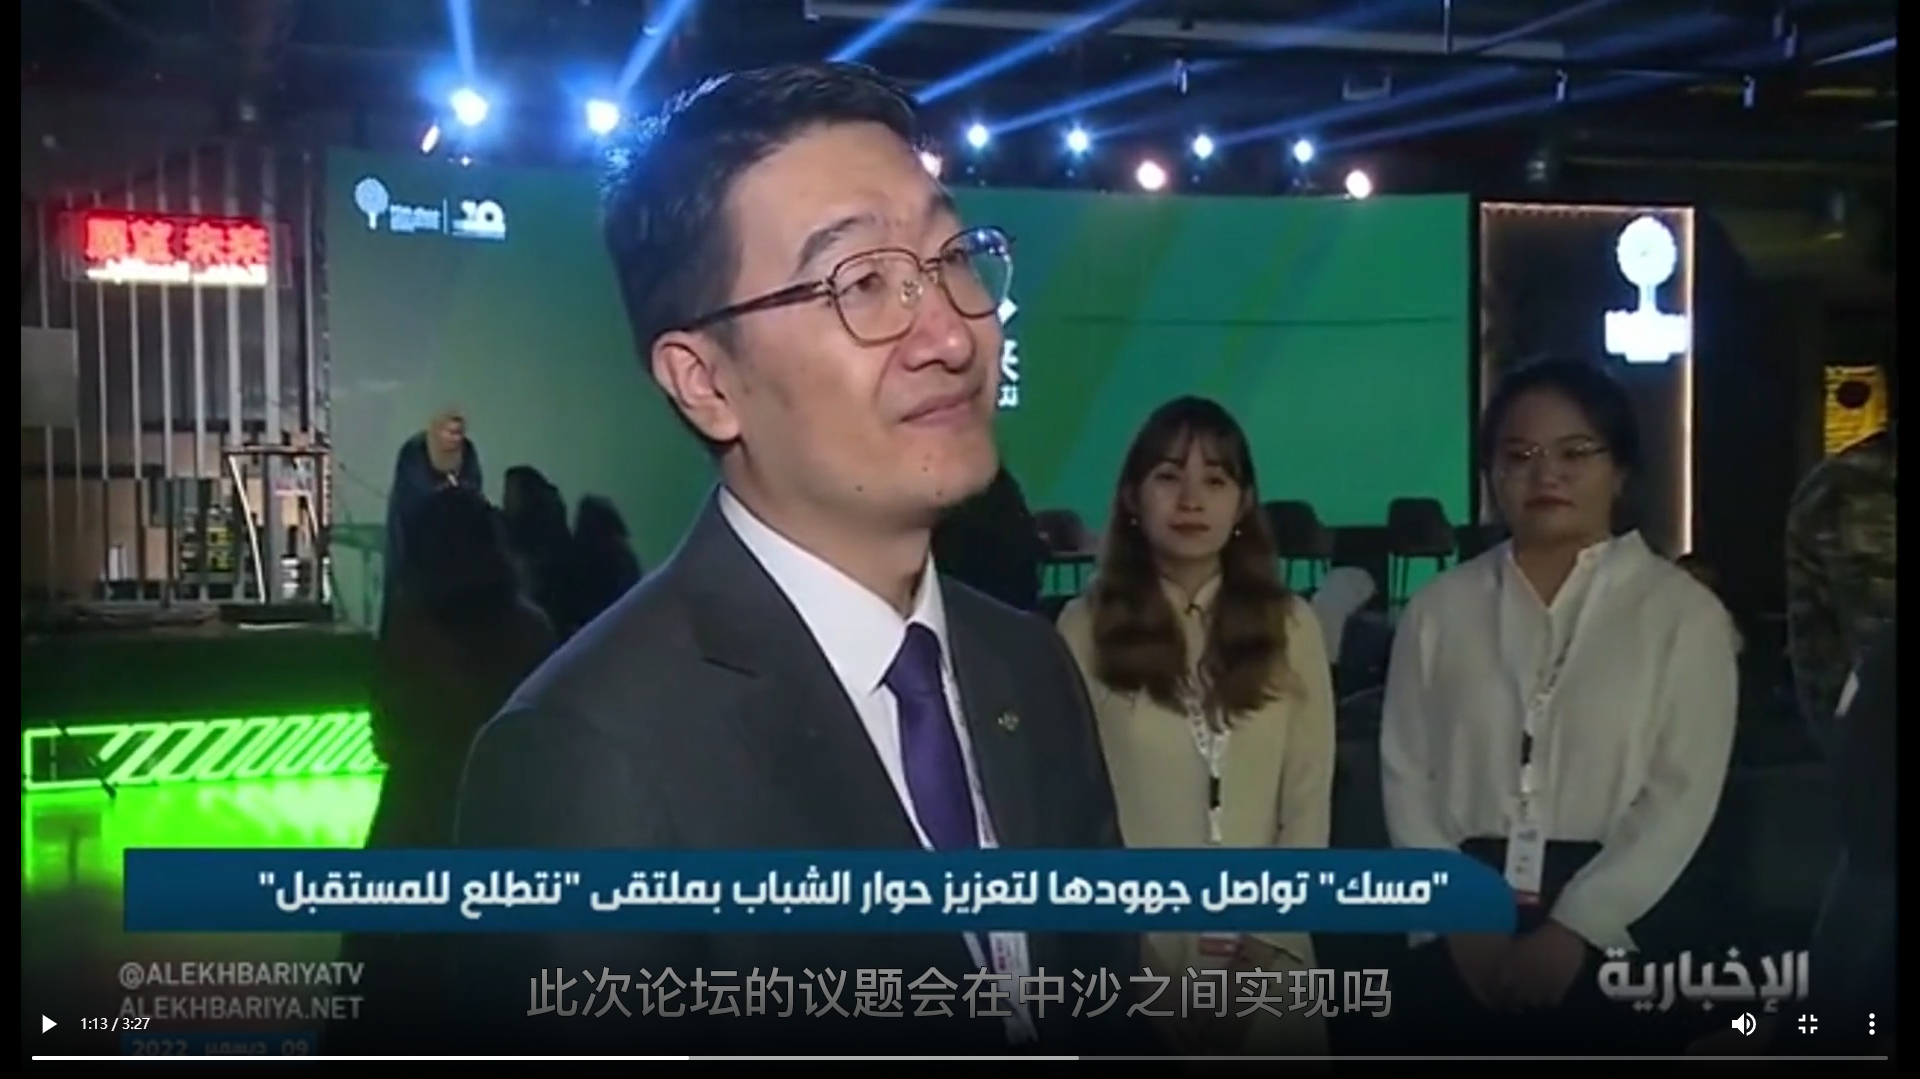 智慧宫国际文化传播集团有限公司副董事长马永亮接受沙特官方媒体ALEKHBARIYA电视台采访